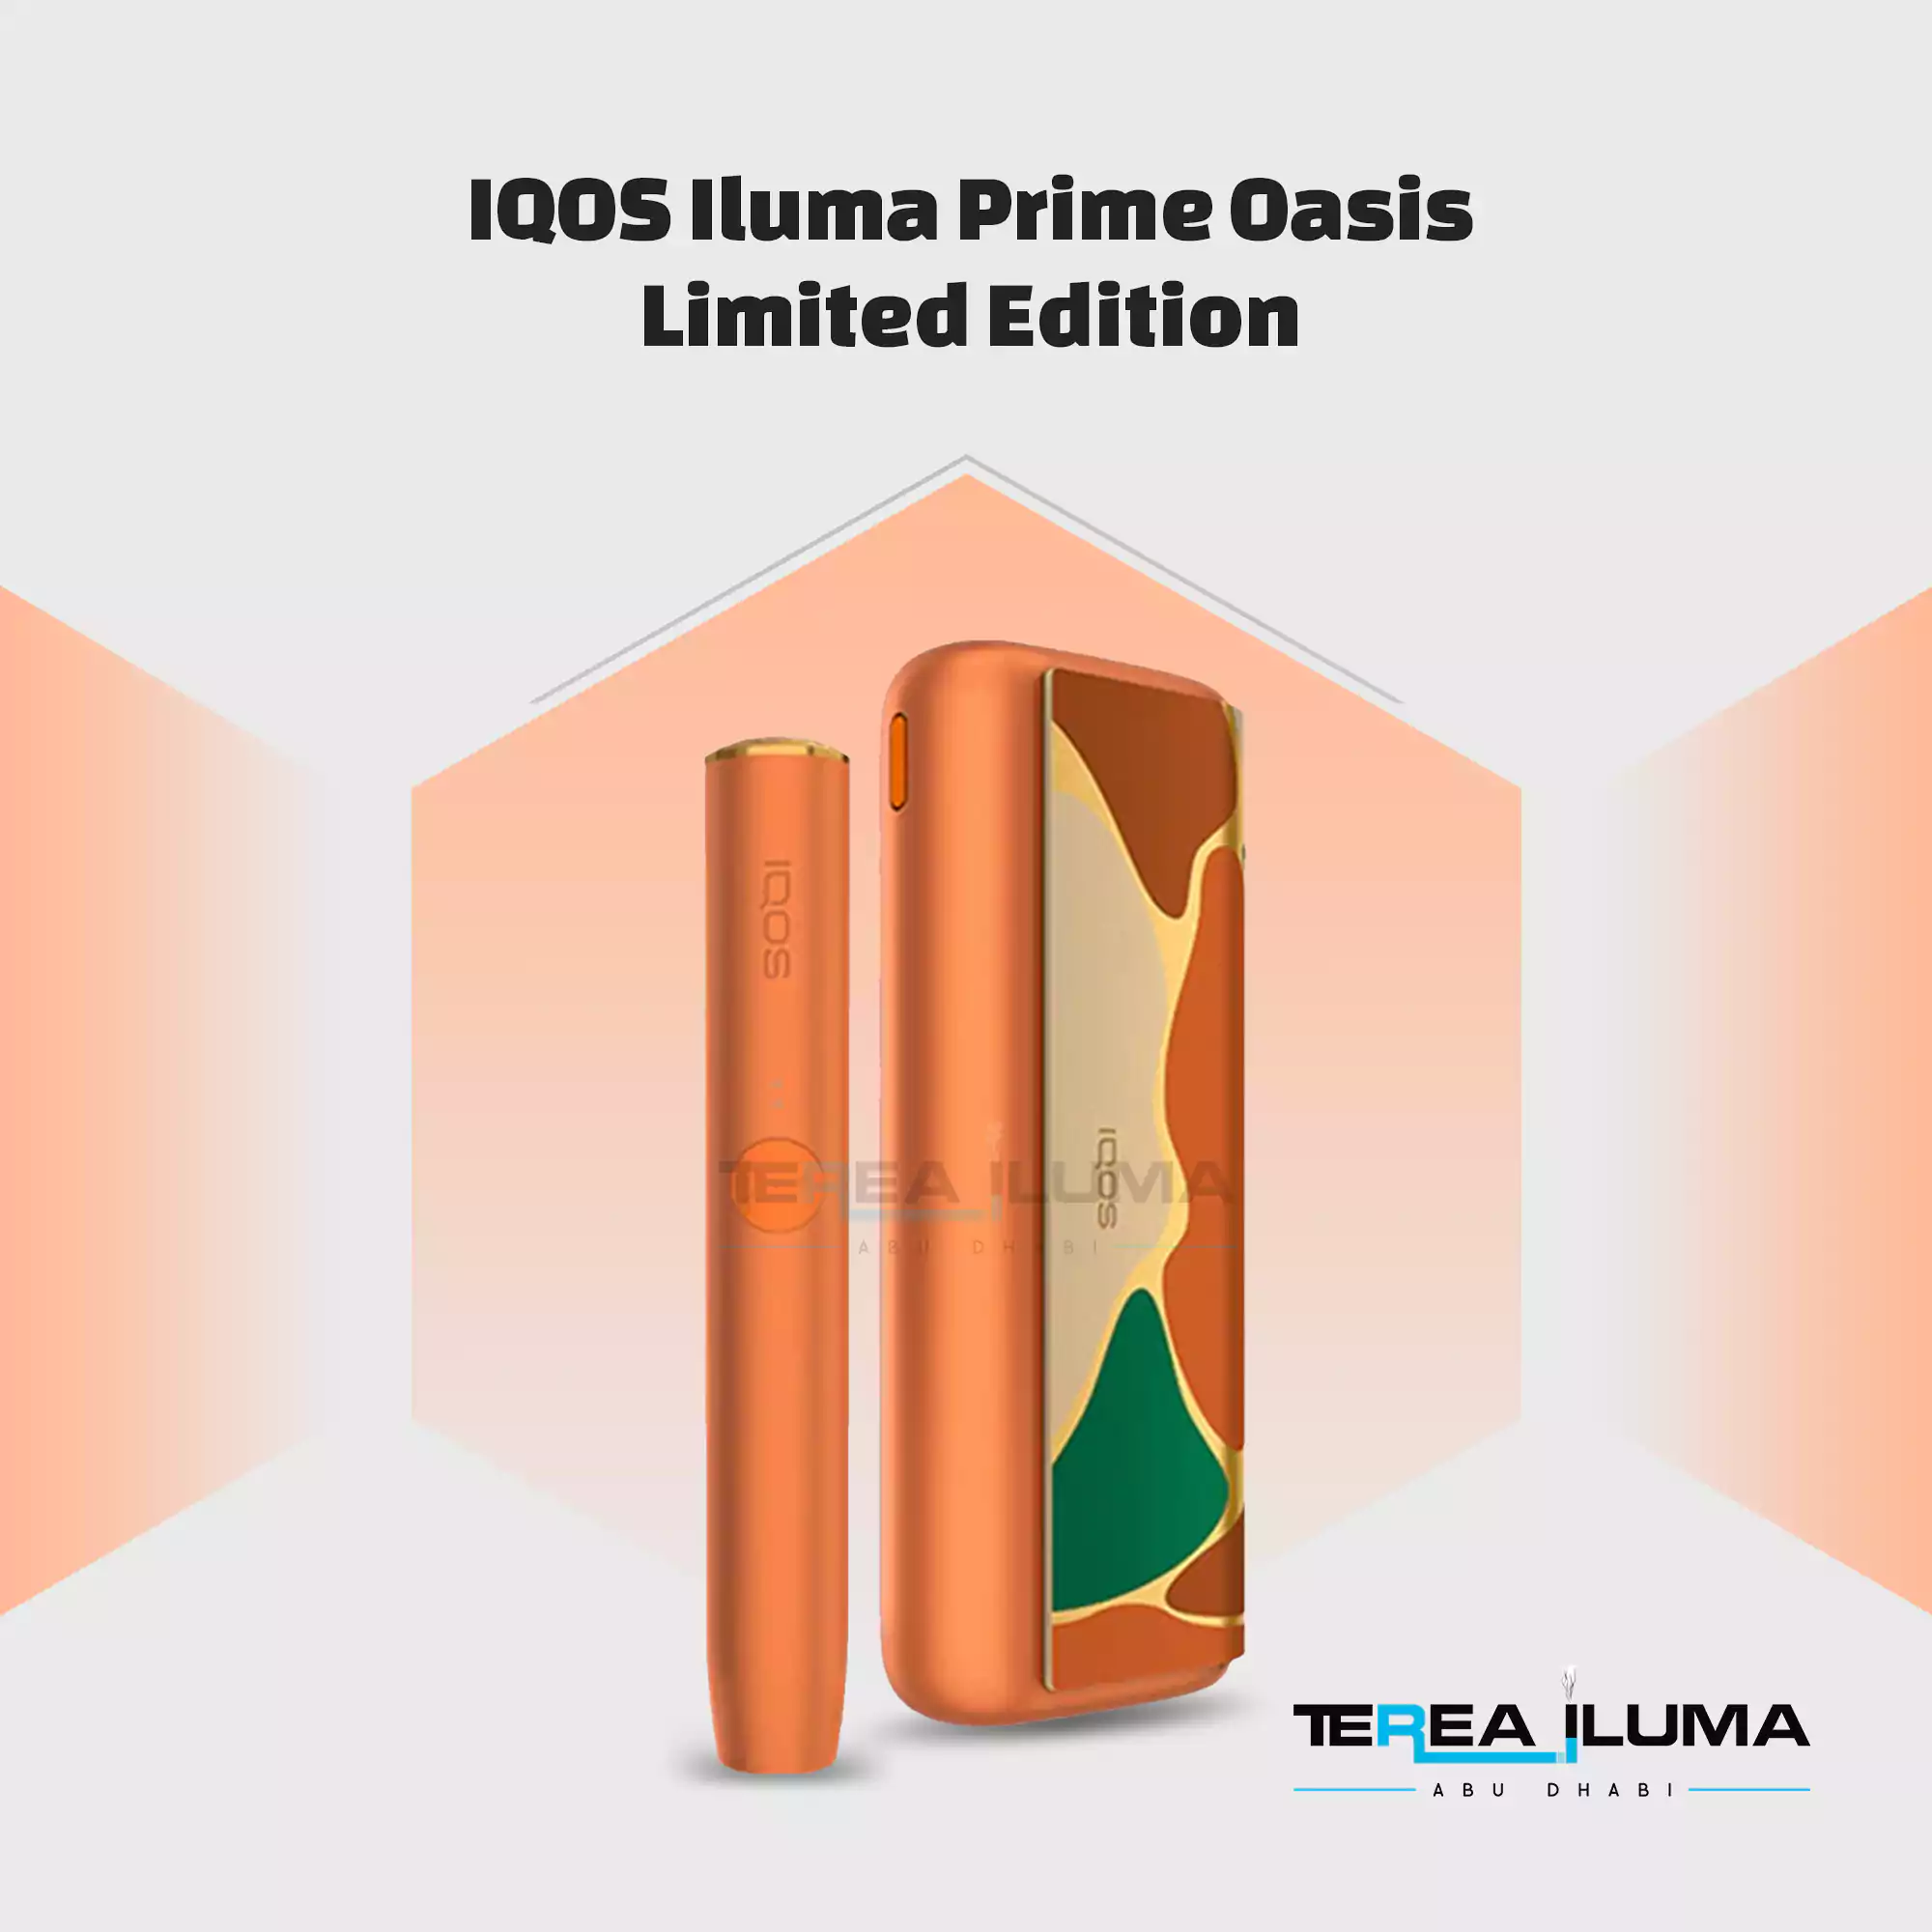 IQOS Iluma Prime Oasis Limited Edition - TEREA ILUMA ABU DHABI